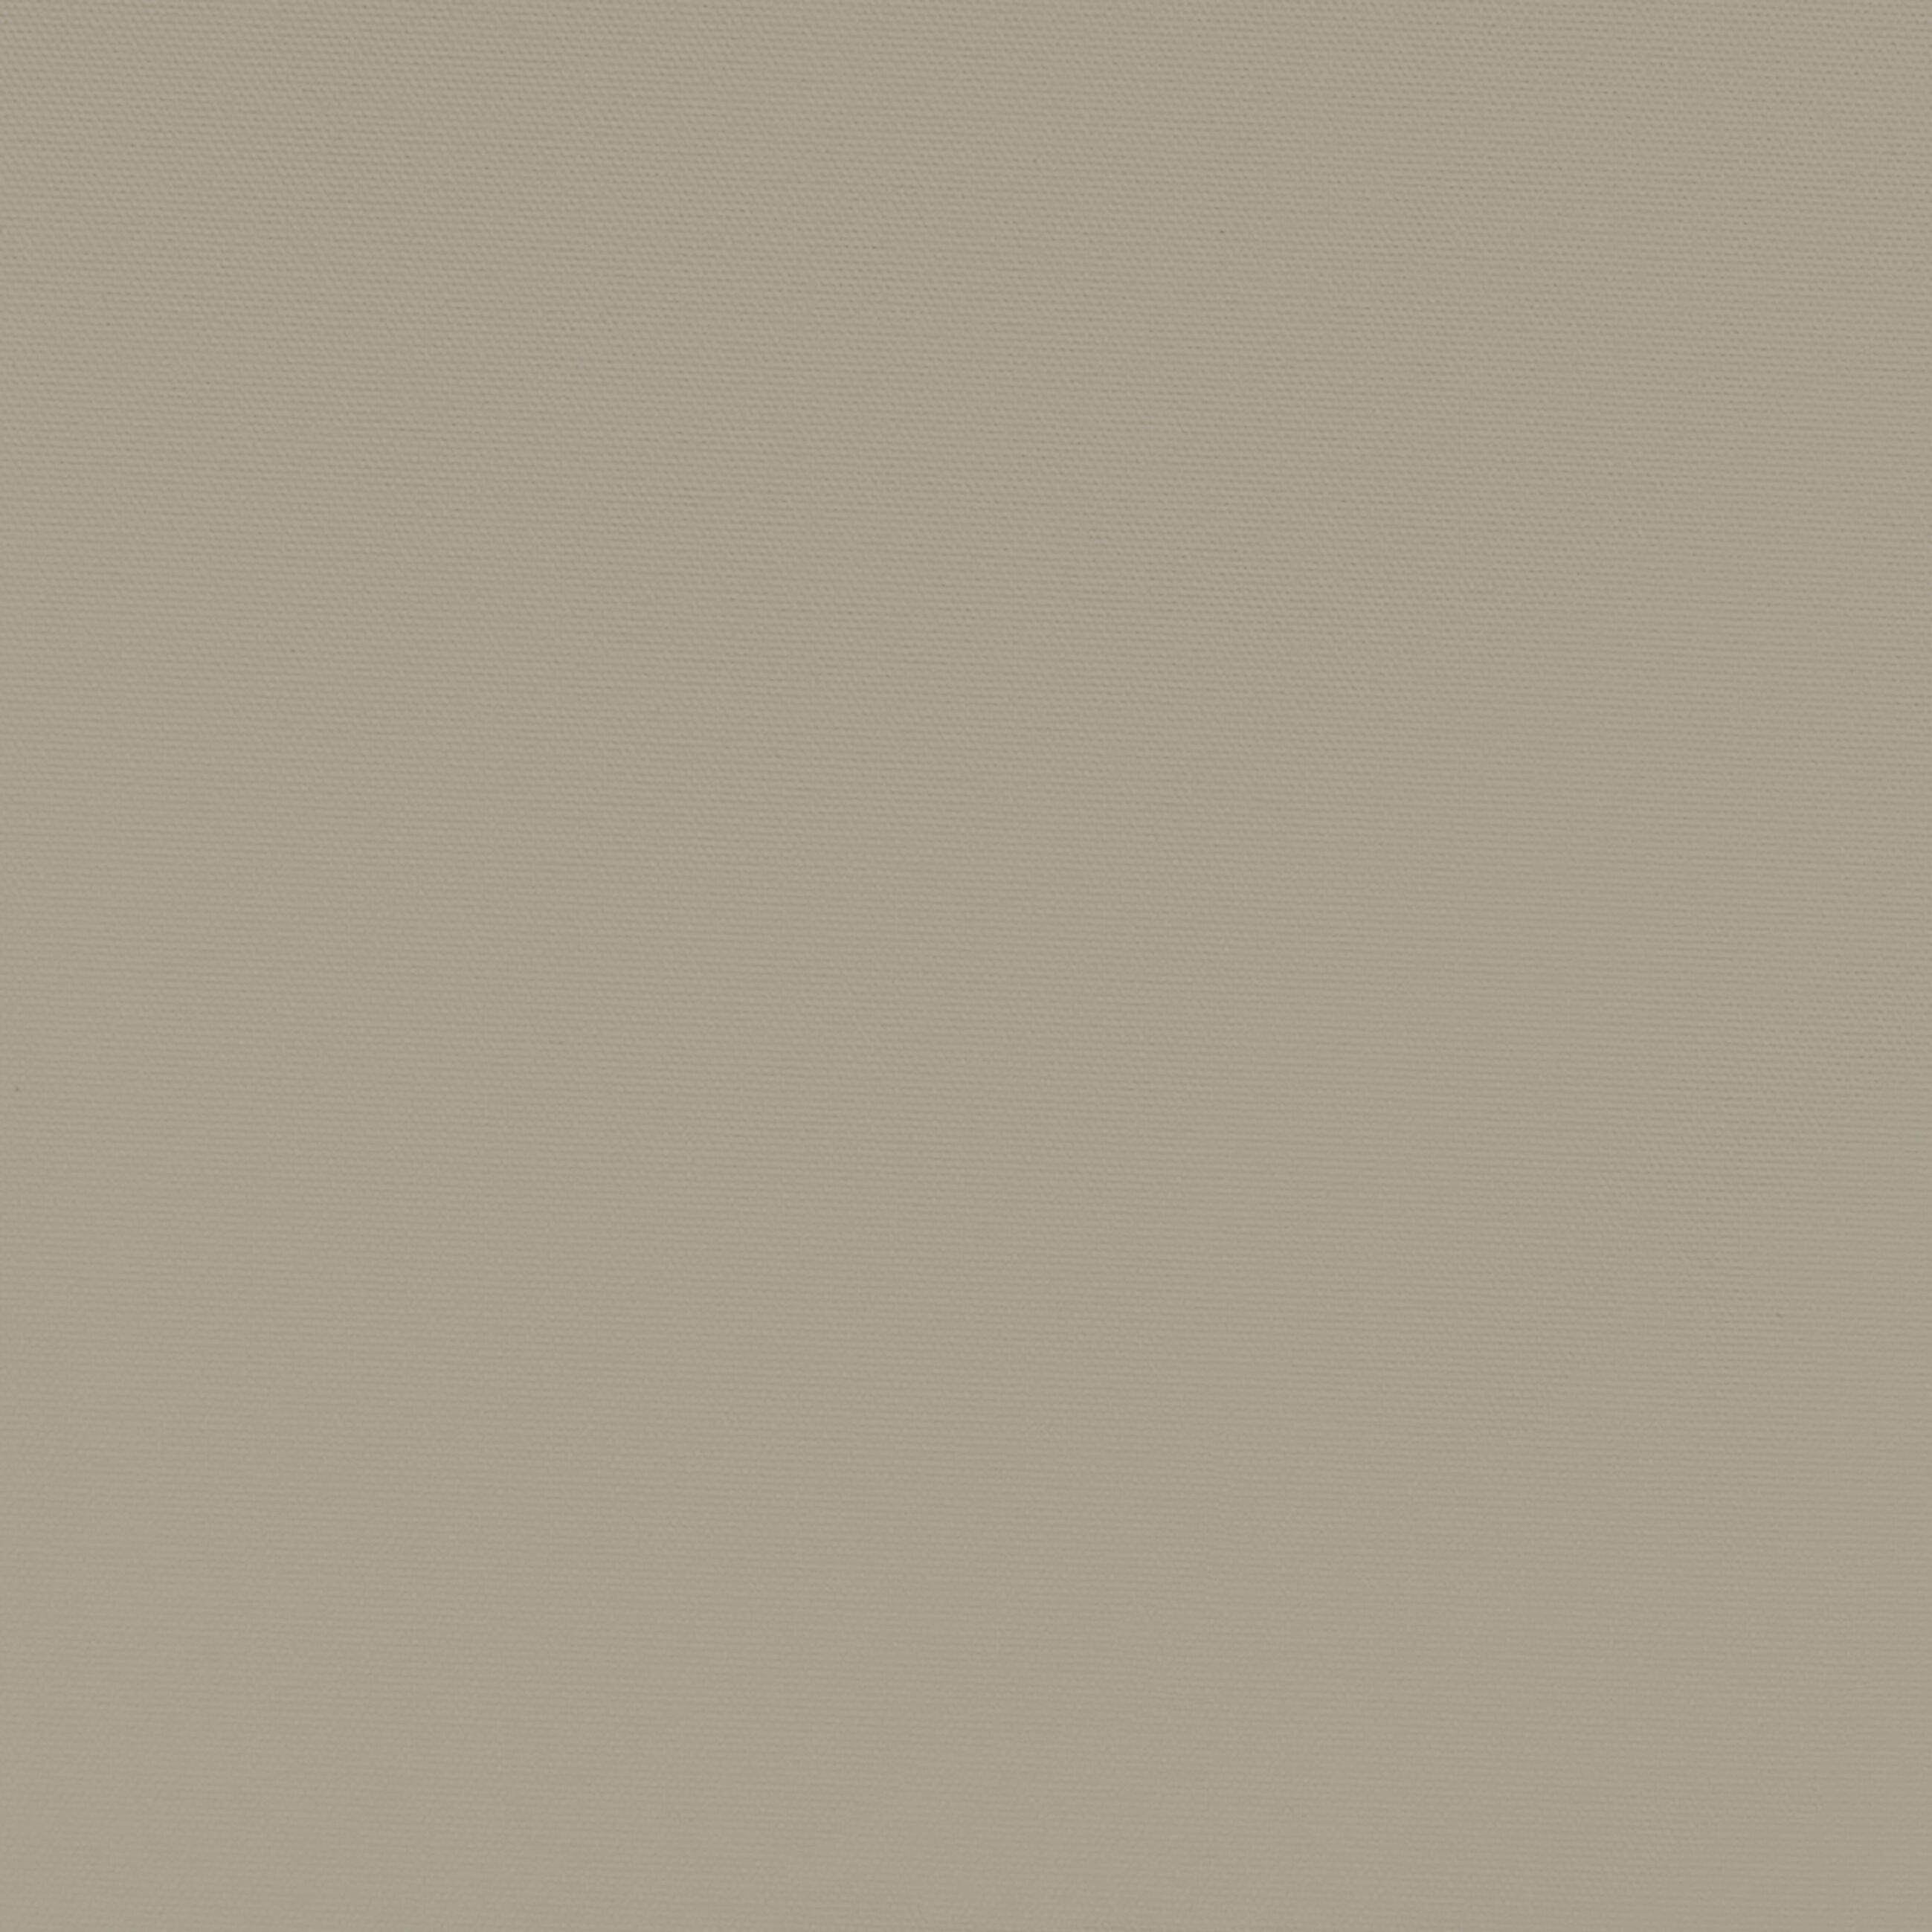 Tenda Oscurante ignifuga night beige fettuccia con passanti nascosti 140 x 300 cm - 7